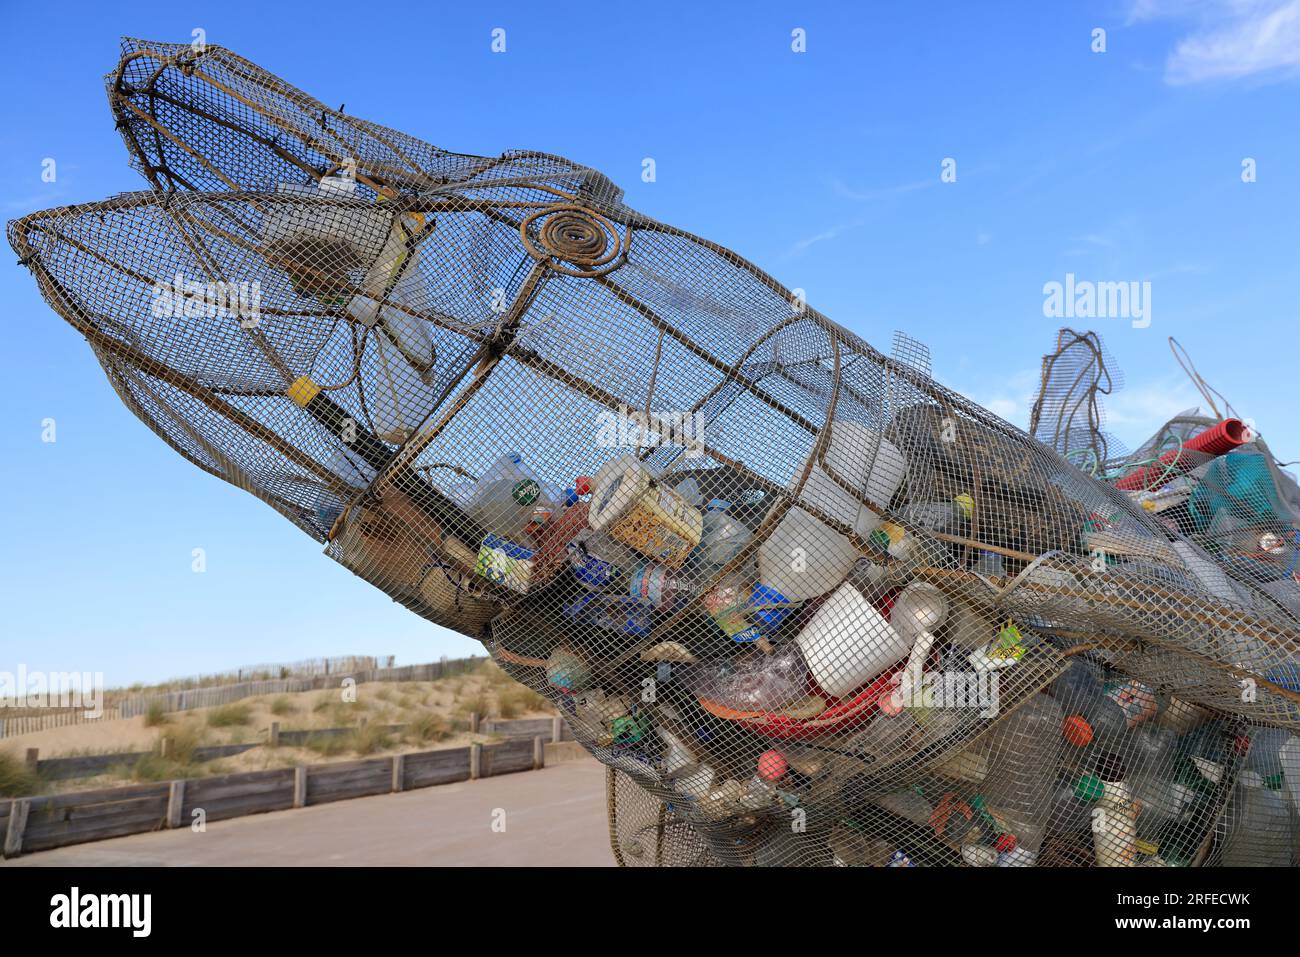 Pollution plastique des océans : sculpture contenant des déchets plastiques rejetés par l’Océan Atlantique sur la plage de Lacanau Océan, Gironde, Nou Stock Photo